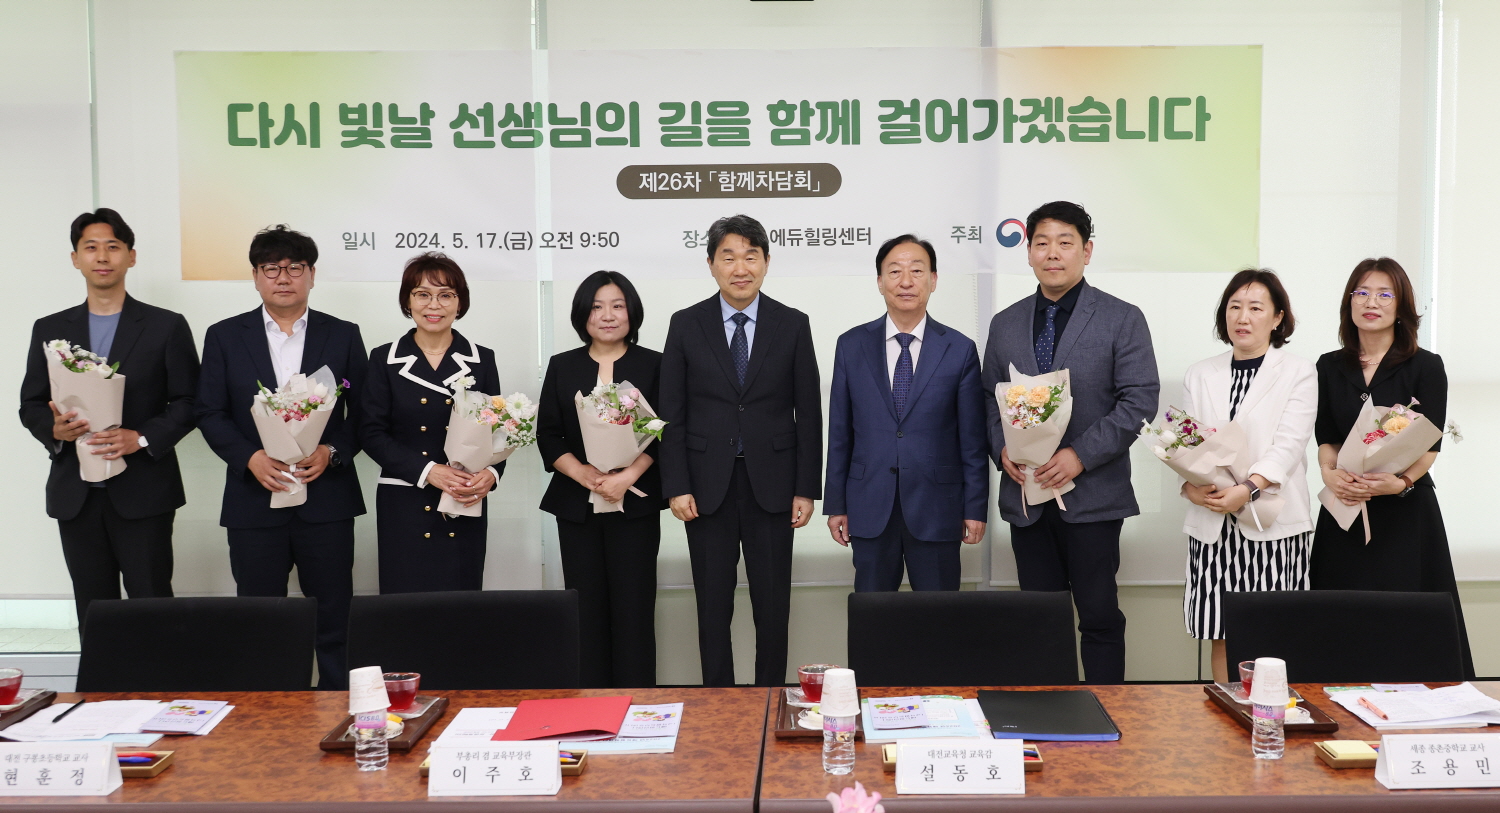 이주호 부총리 겸 교육부장관은 5월 17일(금), 대전 에듀힐링센터를 방문해 ‘제26차 찾아가는 함께차담회’를 개최했다.